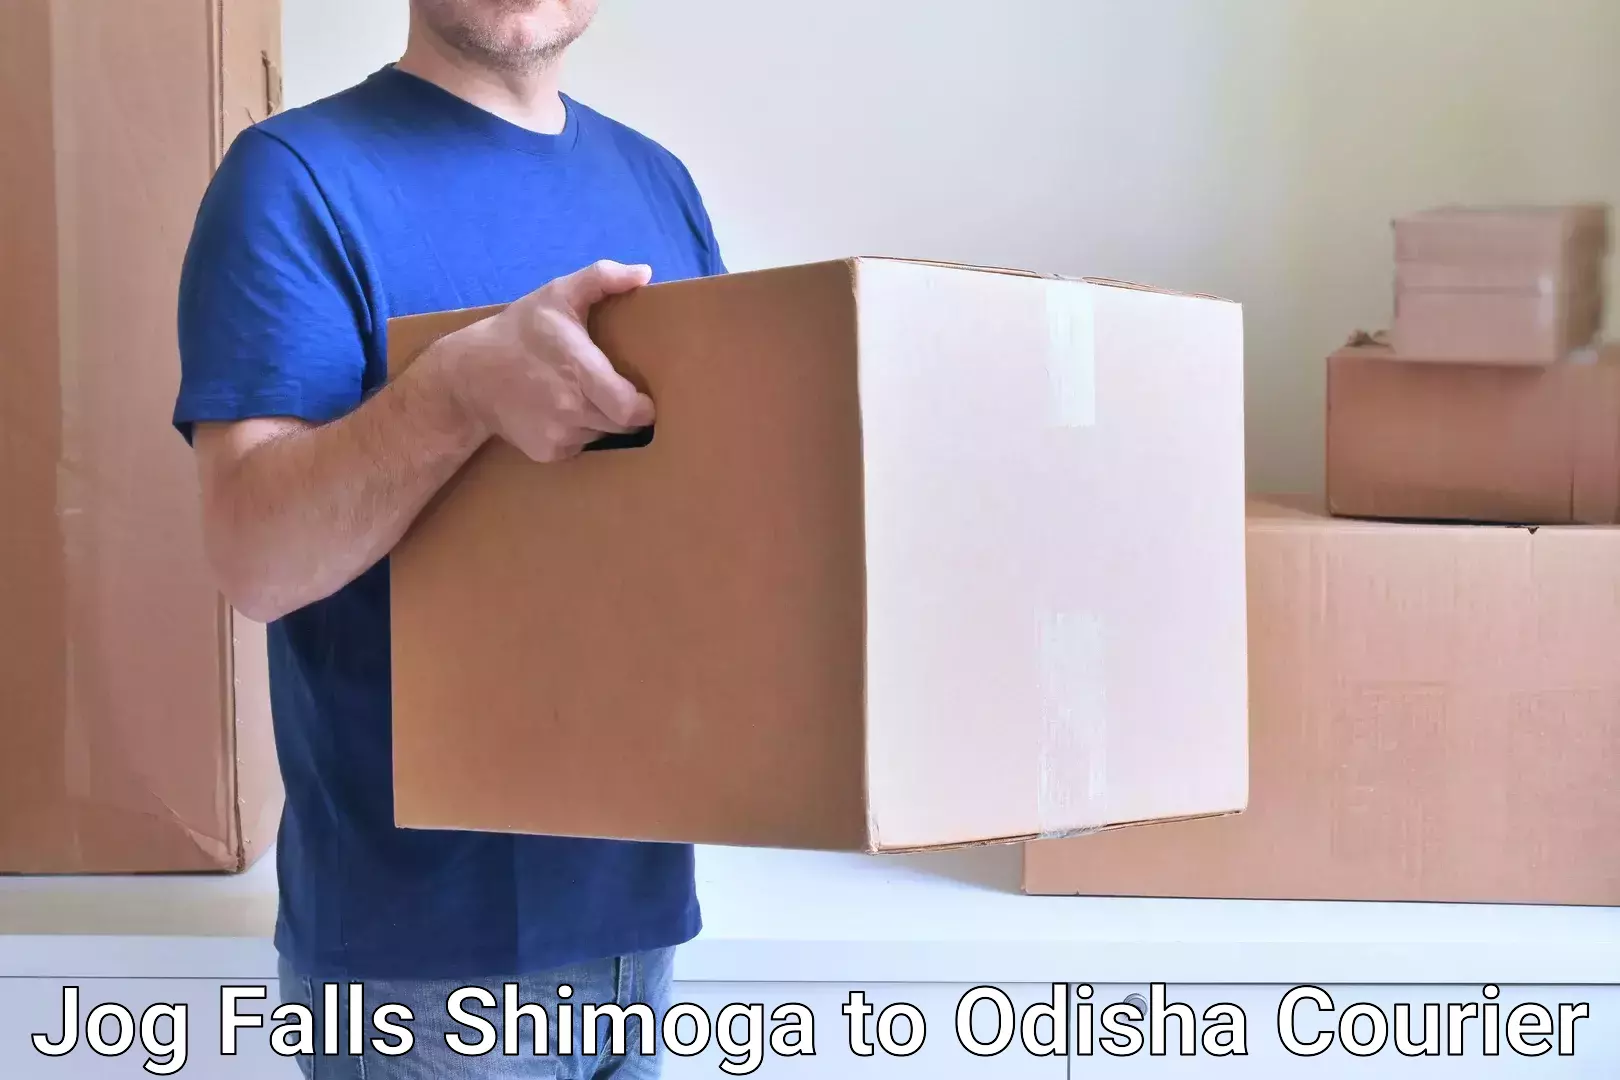 Same-day delivery solutions Jog Falls Shimoga to Binka